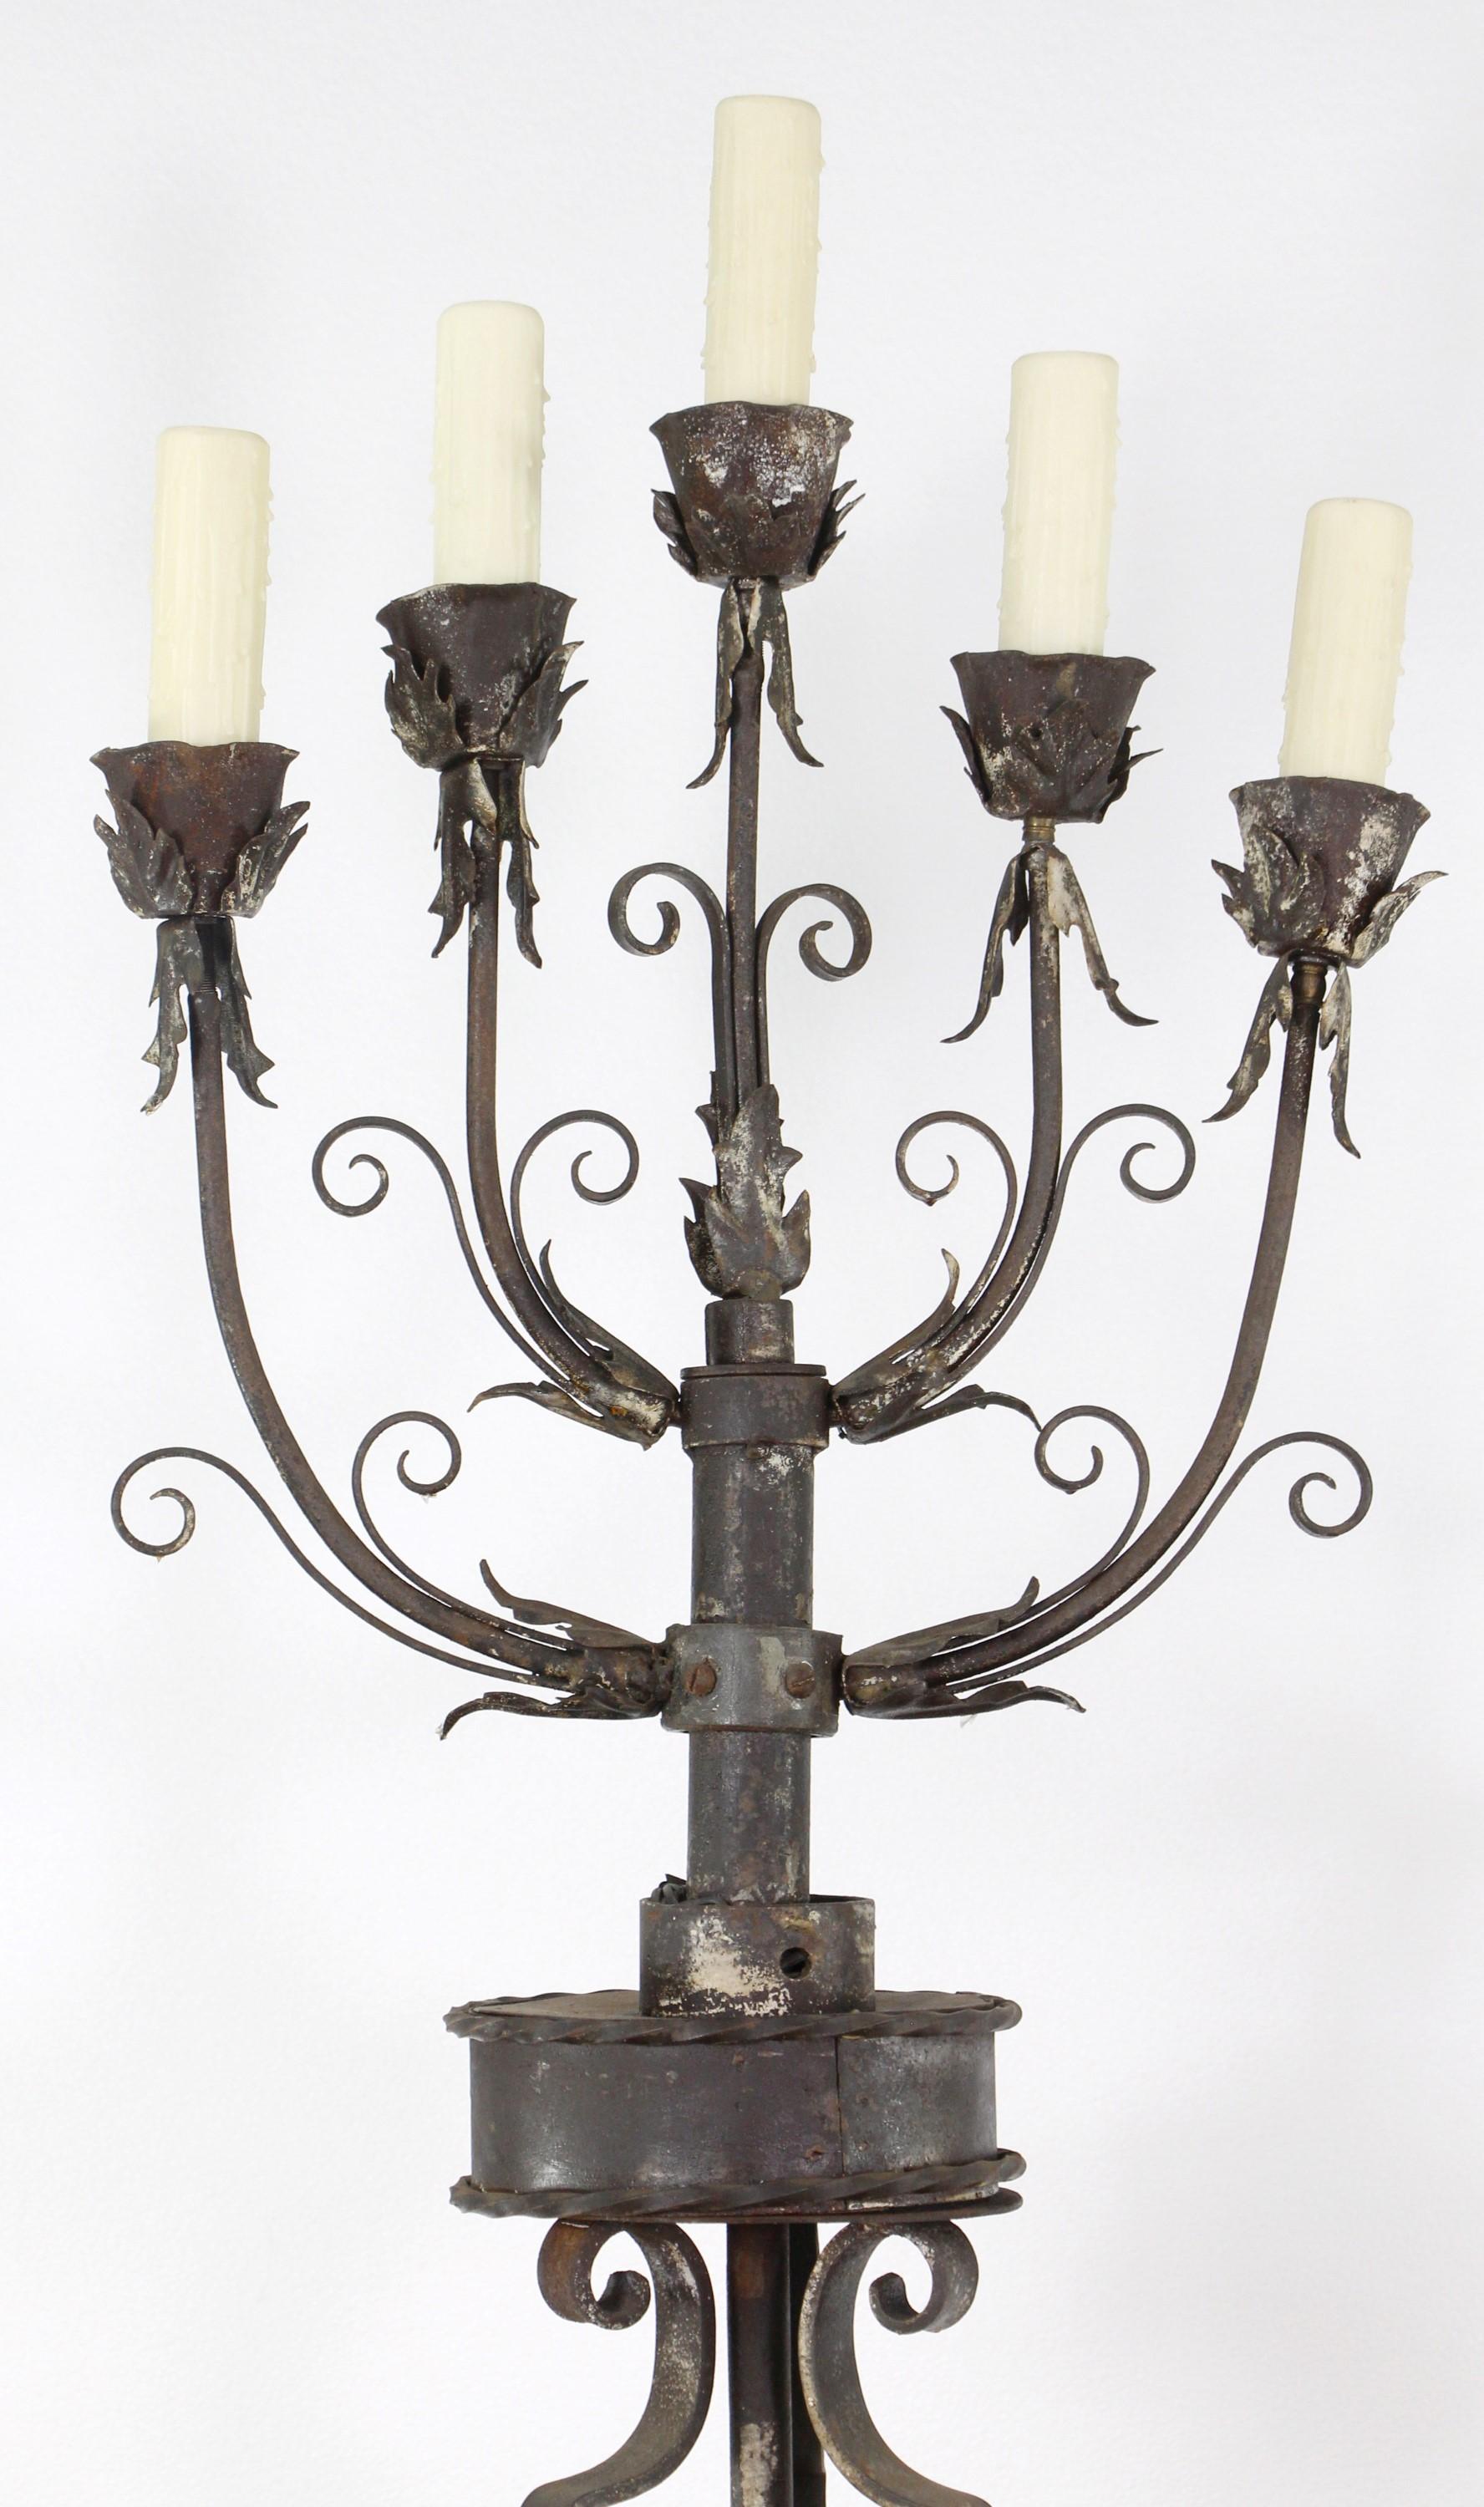 Paire de lampadaires à candélabre du XIXe siècle. Fer forgé à la main avec des détails floraux et des feuilles. Fait à la main avec des bandes et épinglé ensemble. Maintenant restauré et électrifié. Chaque lampadaire comporte 5 douilles. Le prix est